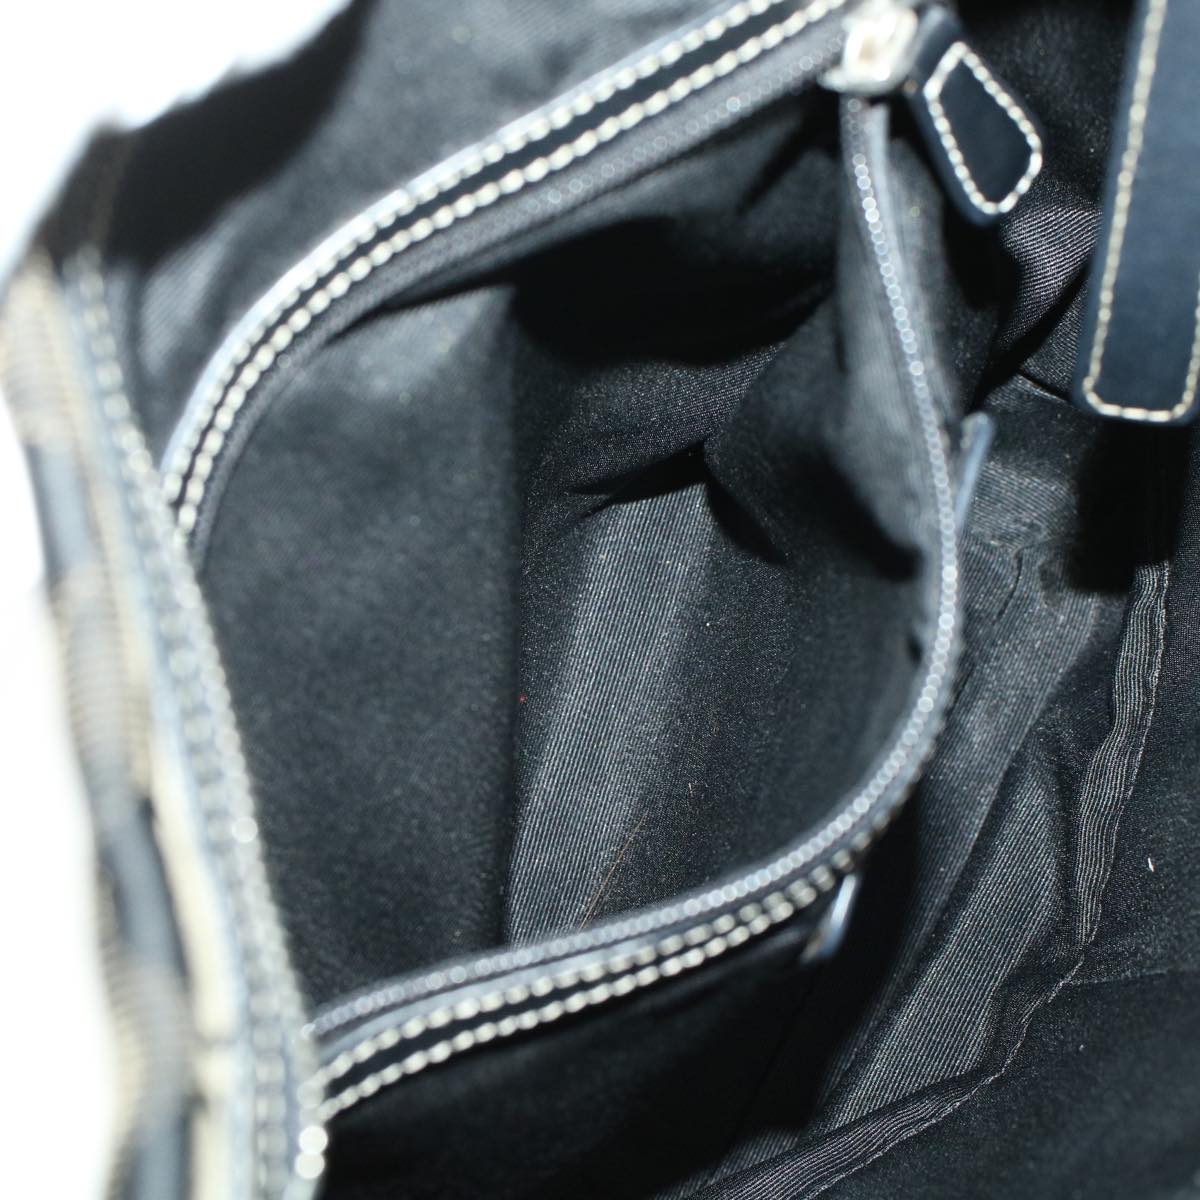 Coach Signature Shoulder Bag Canvas Leather 3Set Black Brown pink Auth 44684